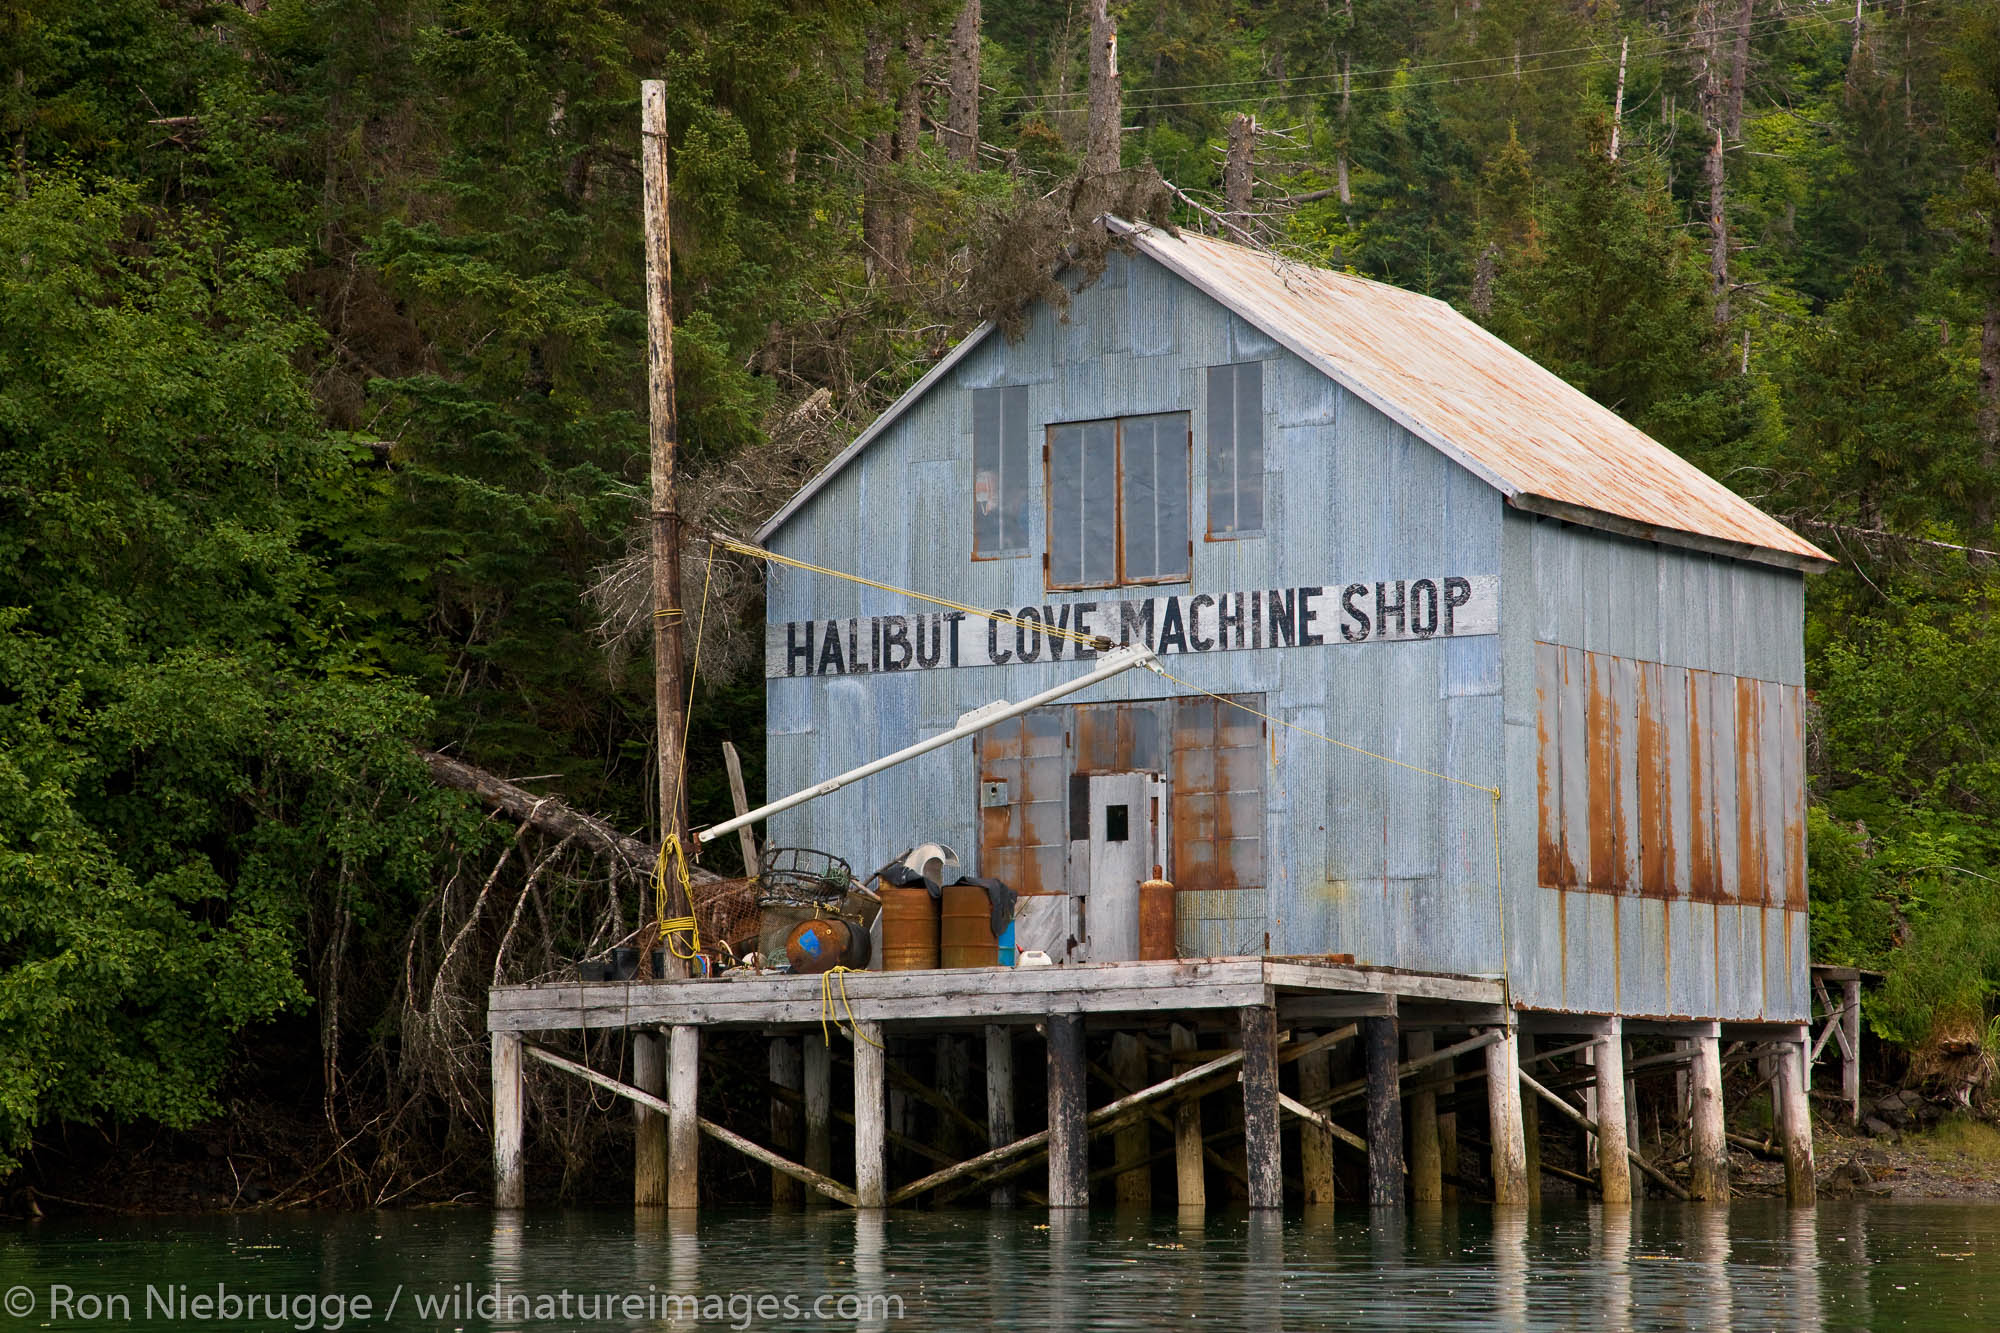 Old Machine Shop, Halibut Cove, Kachemak Bay near Homer, Alaska.